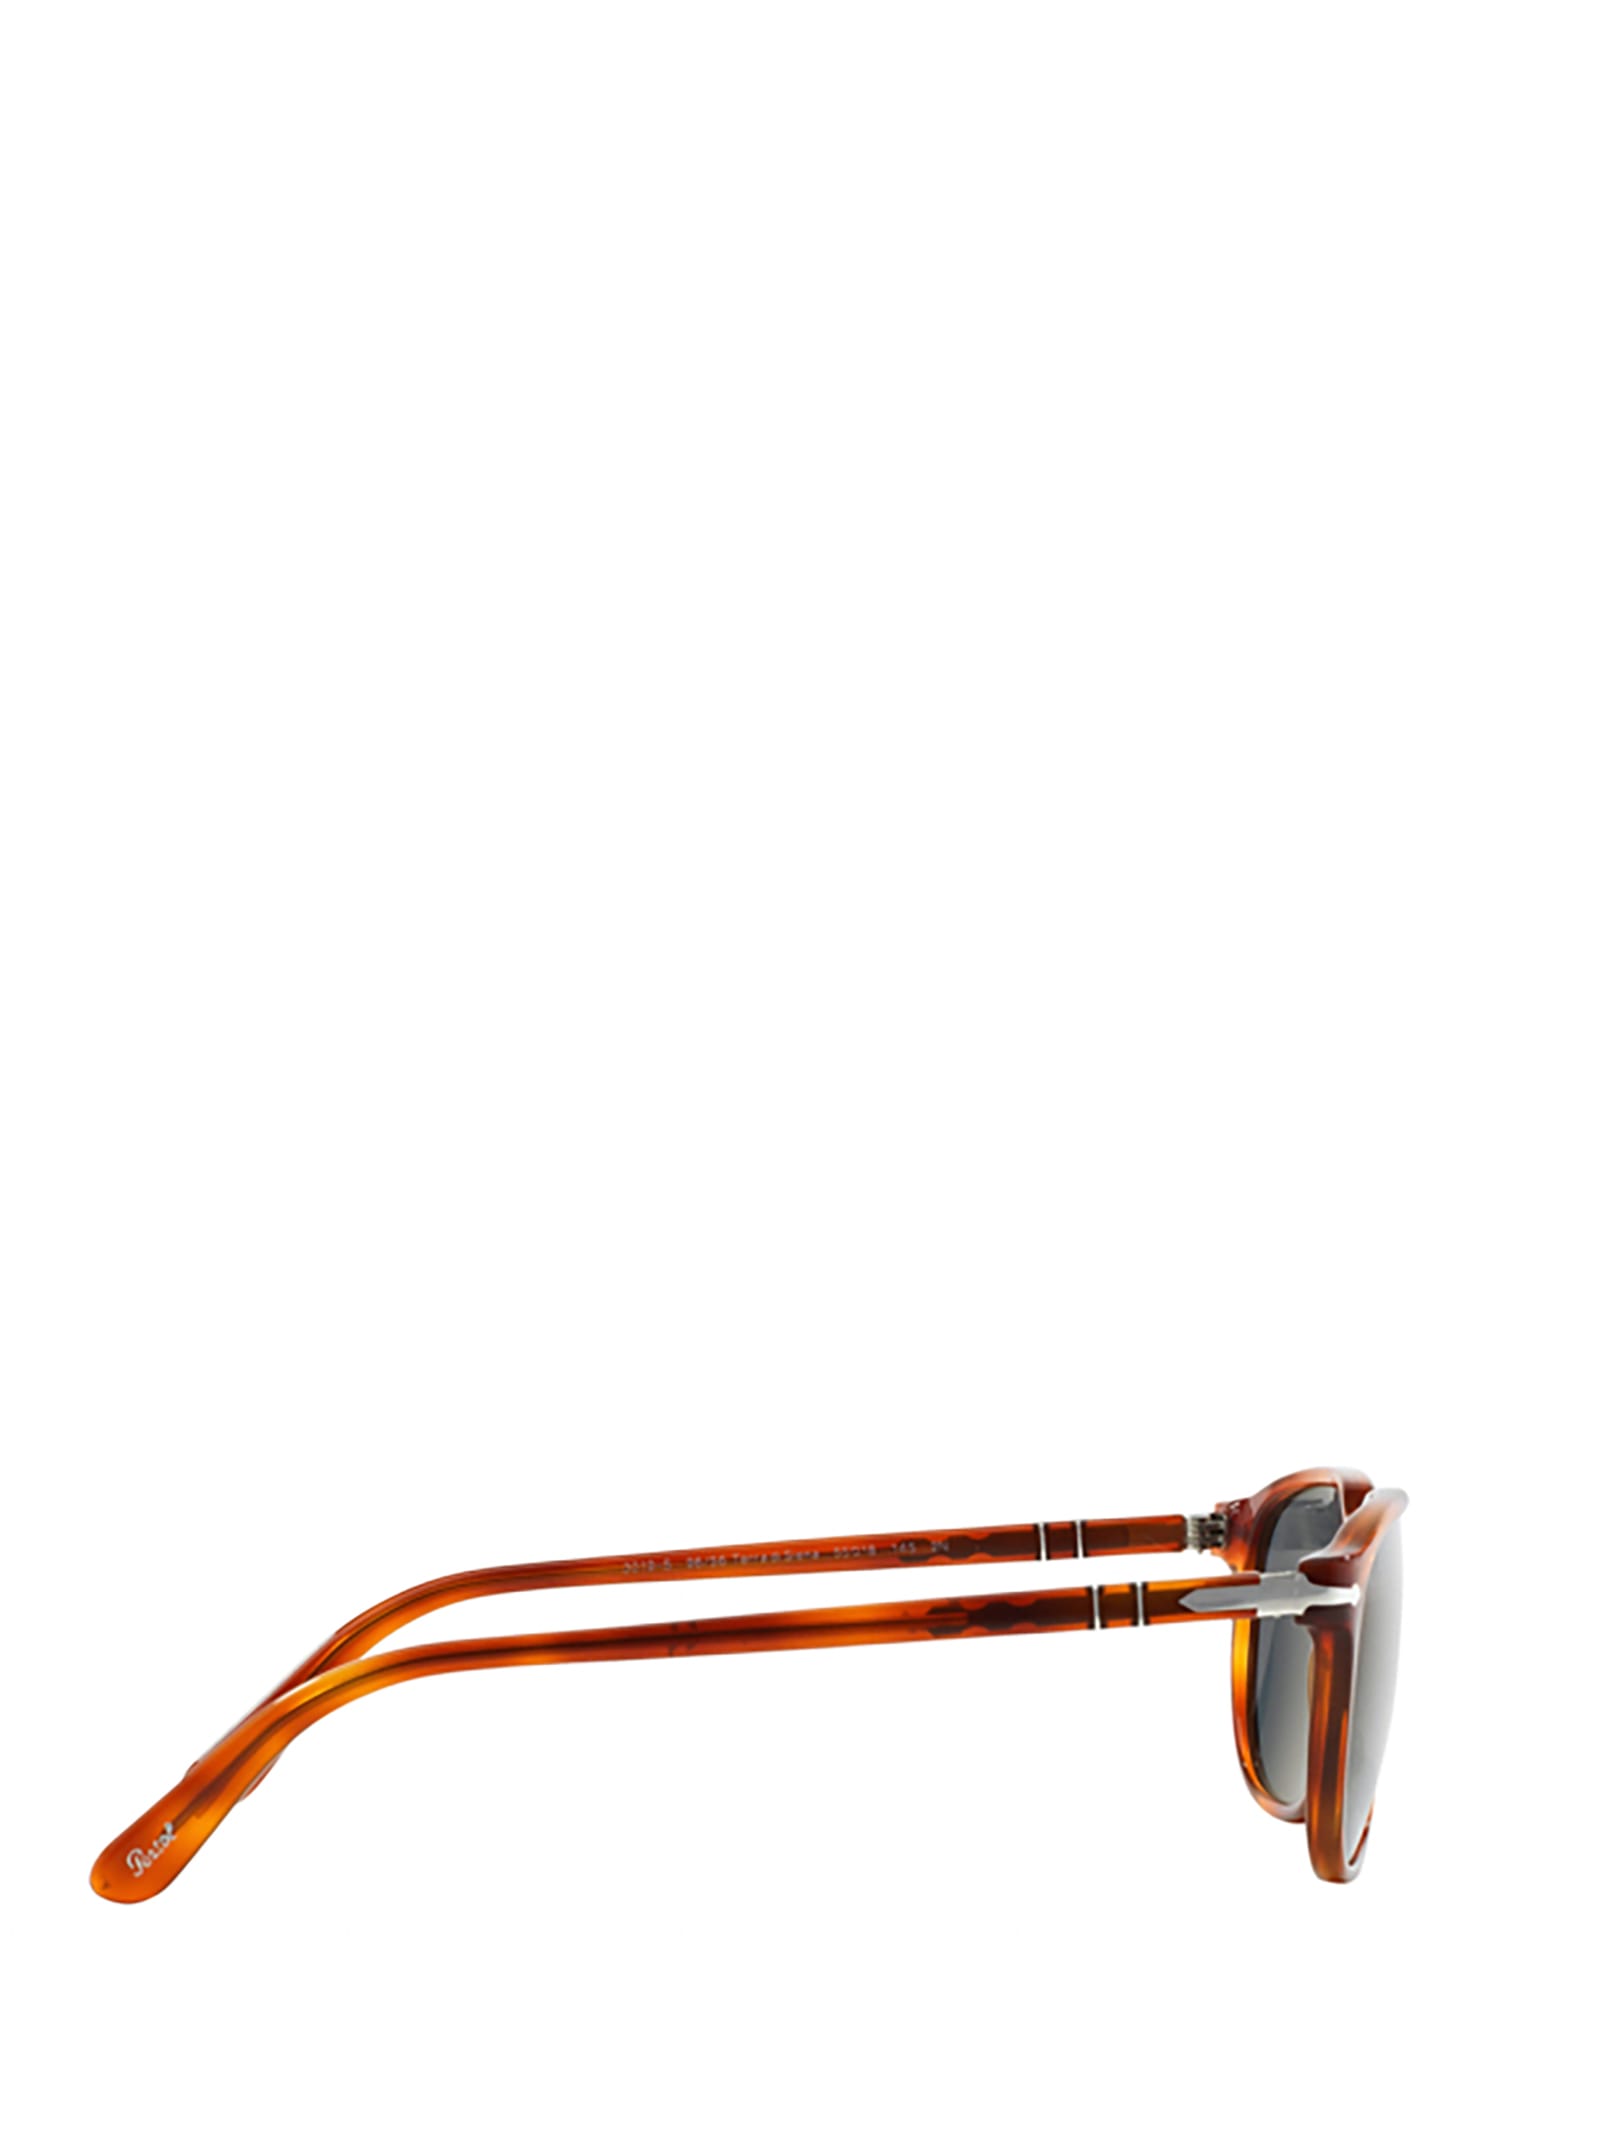 Shop Persol Po3019s Terra Di Siena Sunglasses